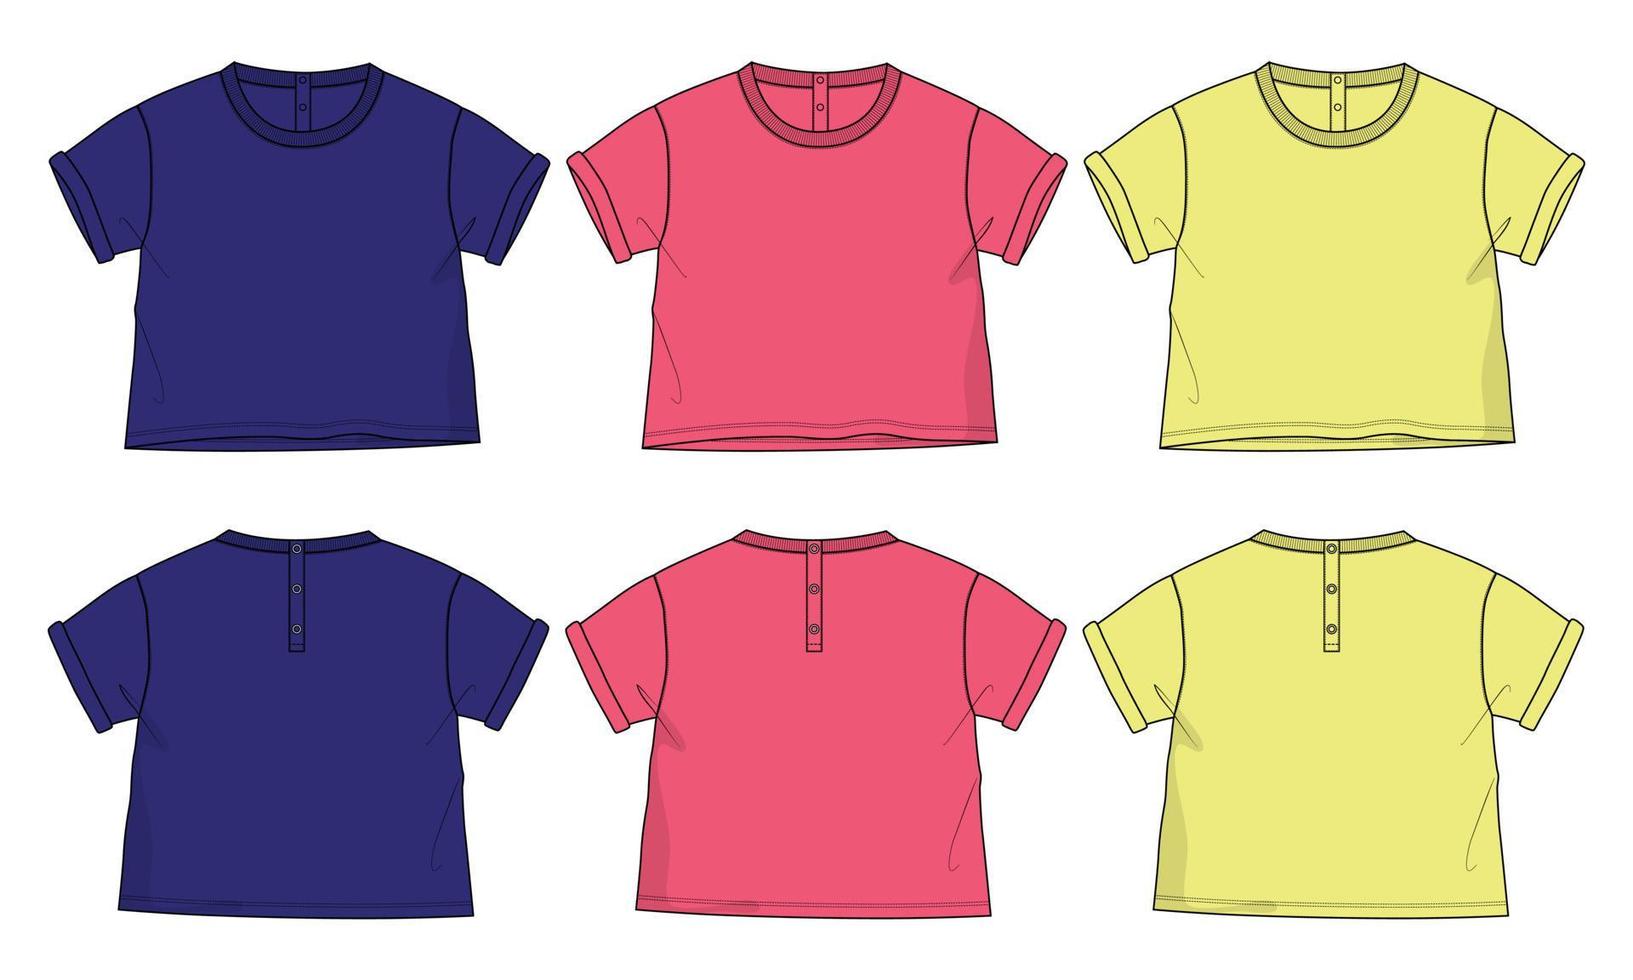 Kurzarm Basic T-Shirt technische Mode flache Skizze Vektor Illustration Vorlage Vorder- und Rückansicht. grundlegendes kleidungsdesign-modell für kinder